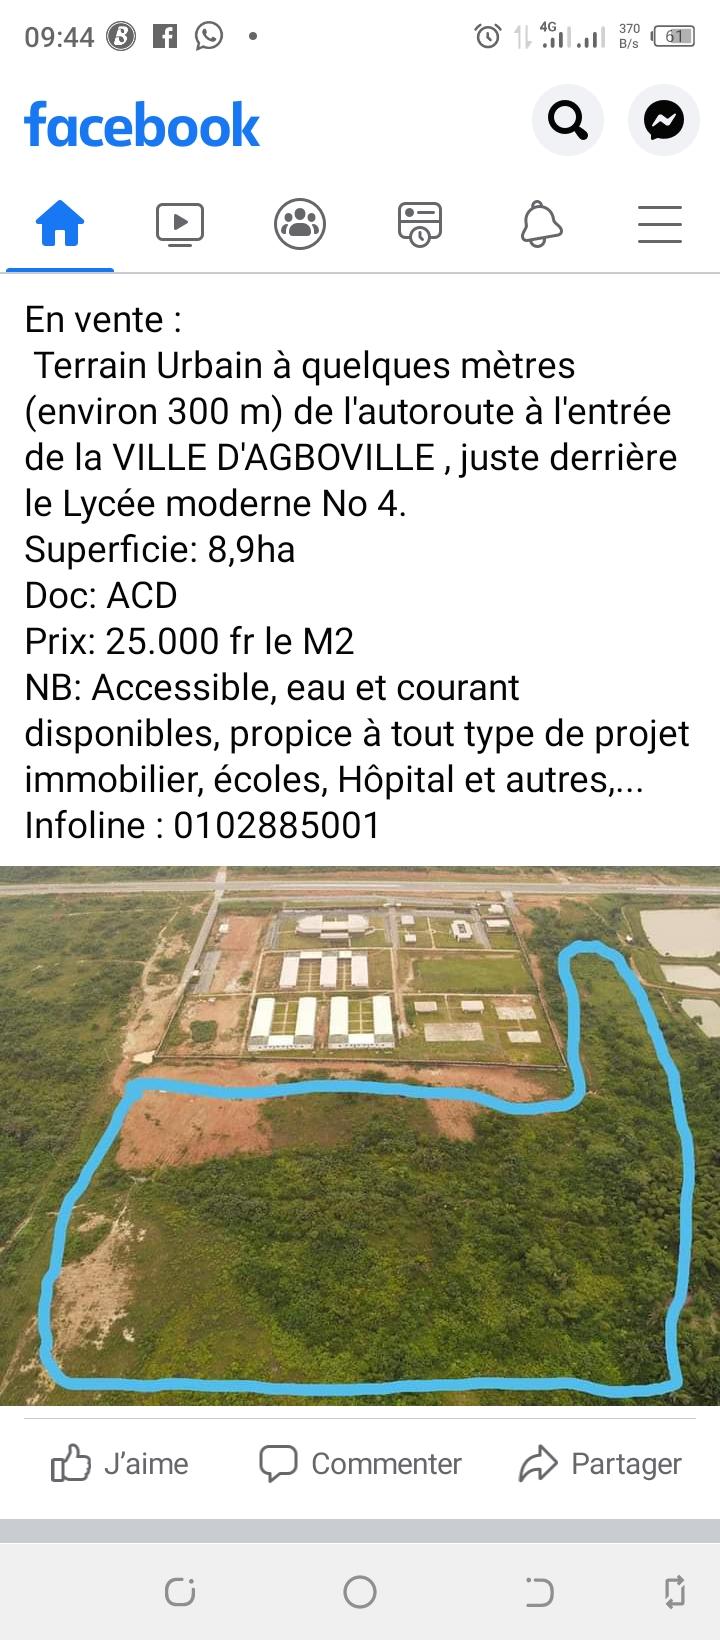 Vente d'un Terrain à 25.000 FCFA  : Agboville-Agboville ()